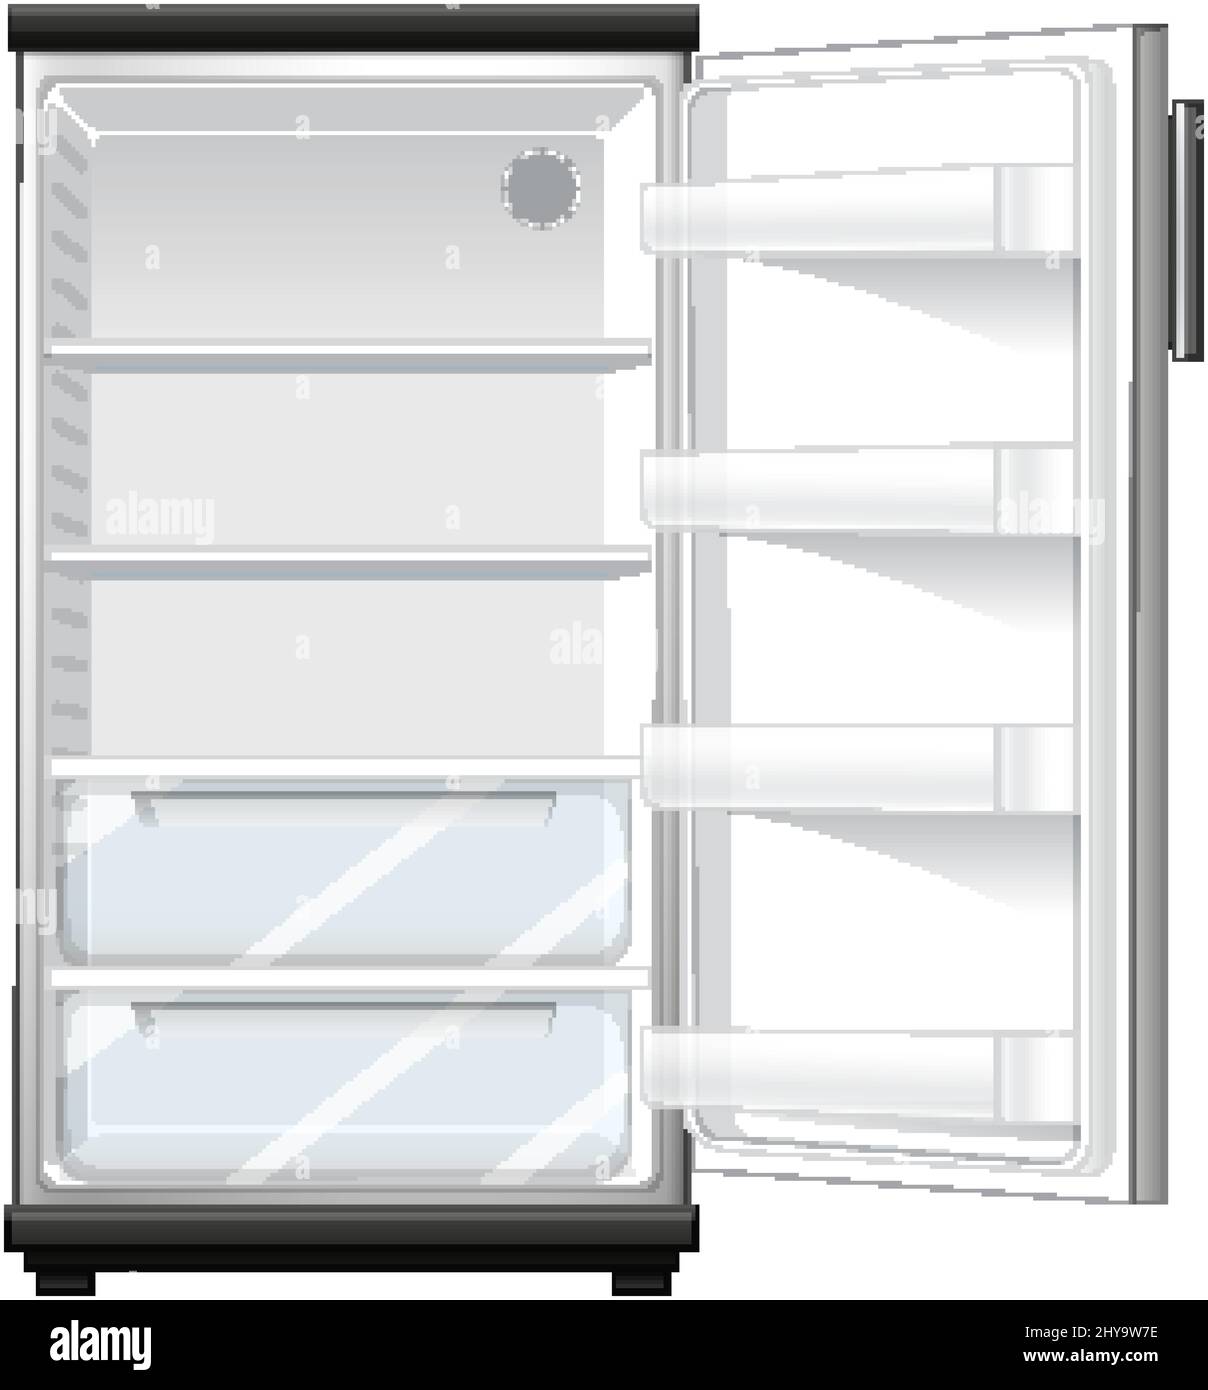 Refridgerator with opened door illustration Stock Vector